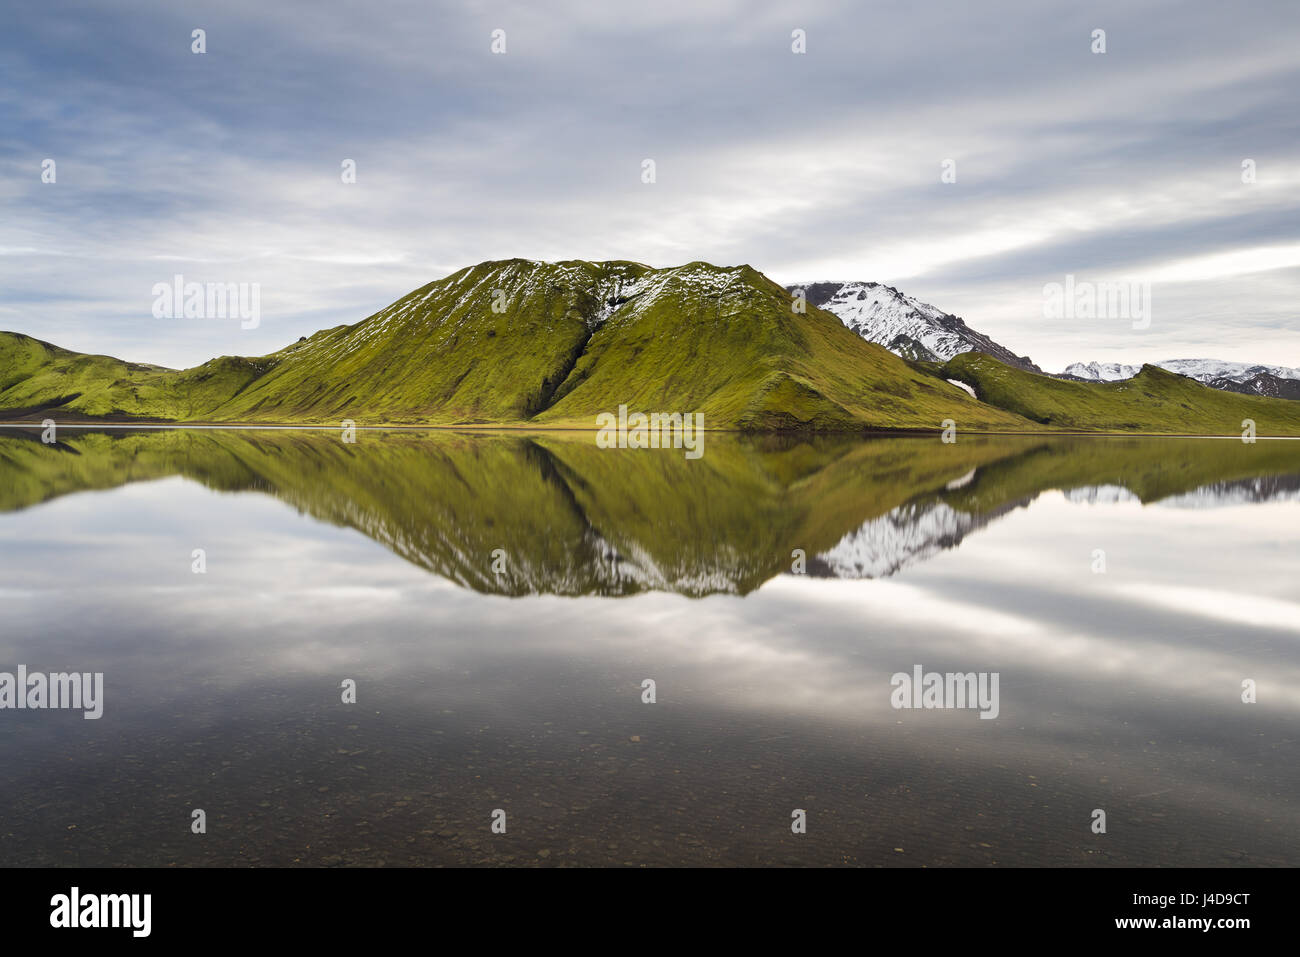 Landmannalaugar hautes terres centrales montagnes avec reflet dans le lac, de l'Islande Banque D'Images